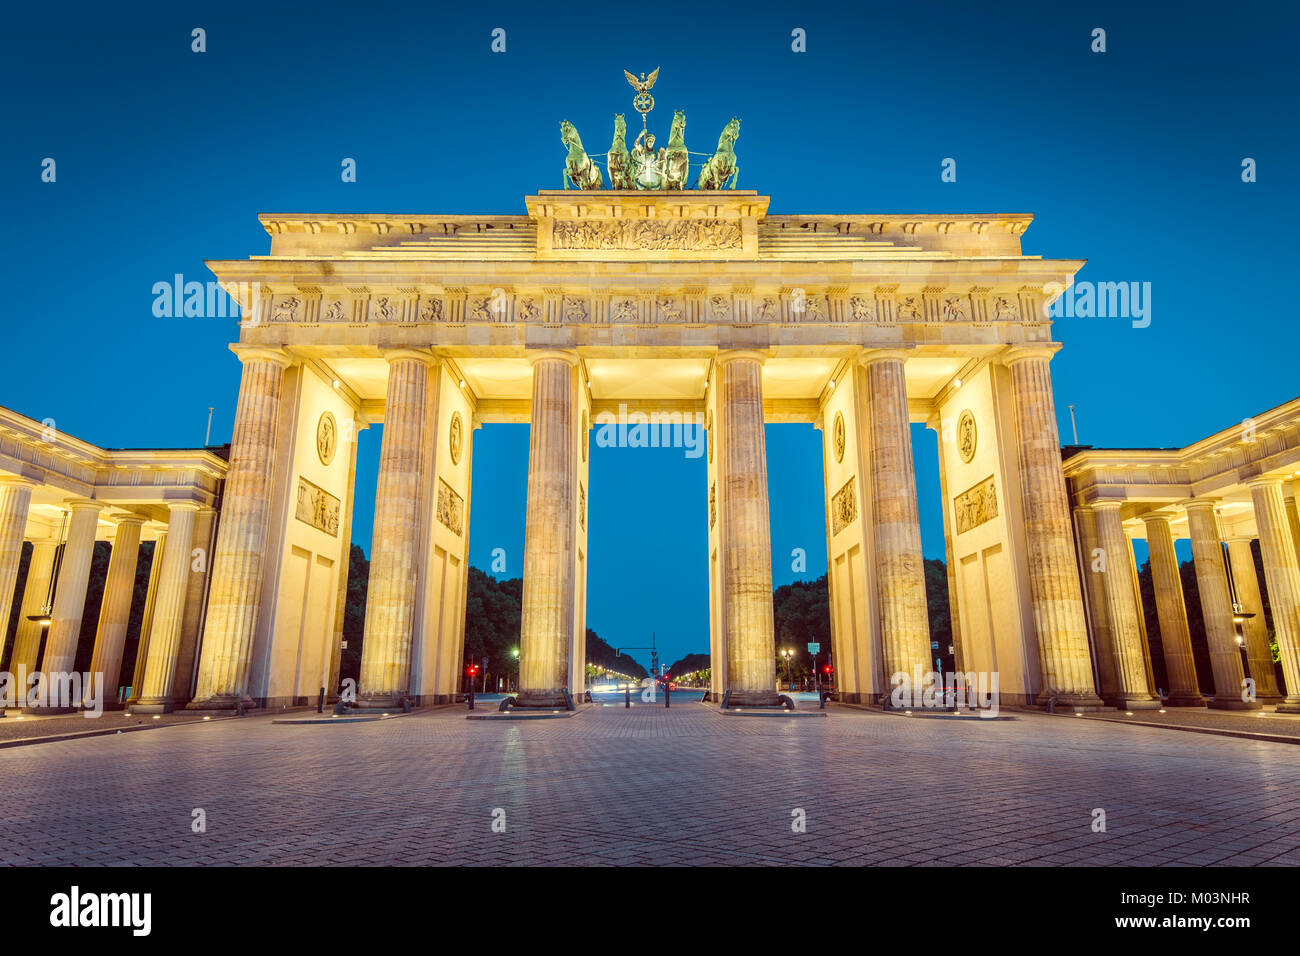 Visualizzazione classica del famoso Brandenburger Tor (Porta di Brandeburgo), uno dei più noti monumenti e simboli nazionali della Germania, in Twilight, Berlino Foto Stock